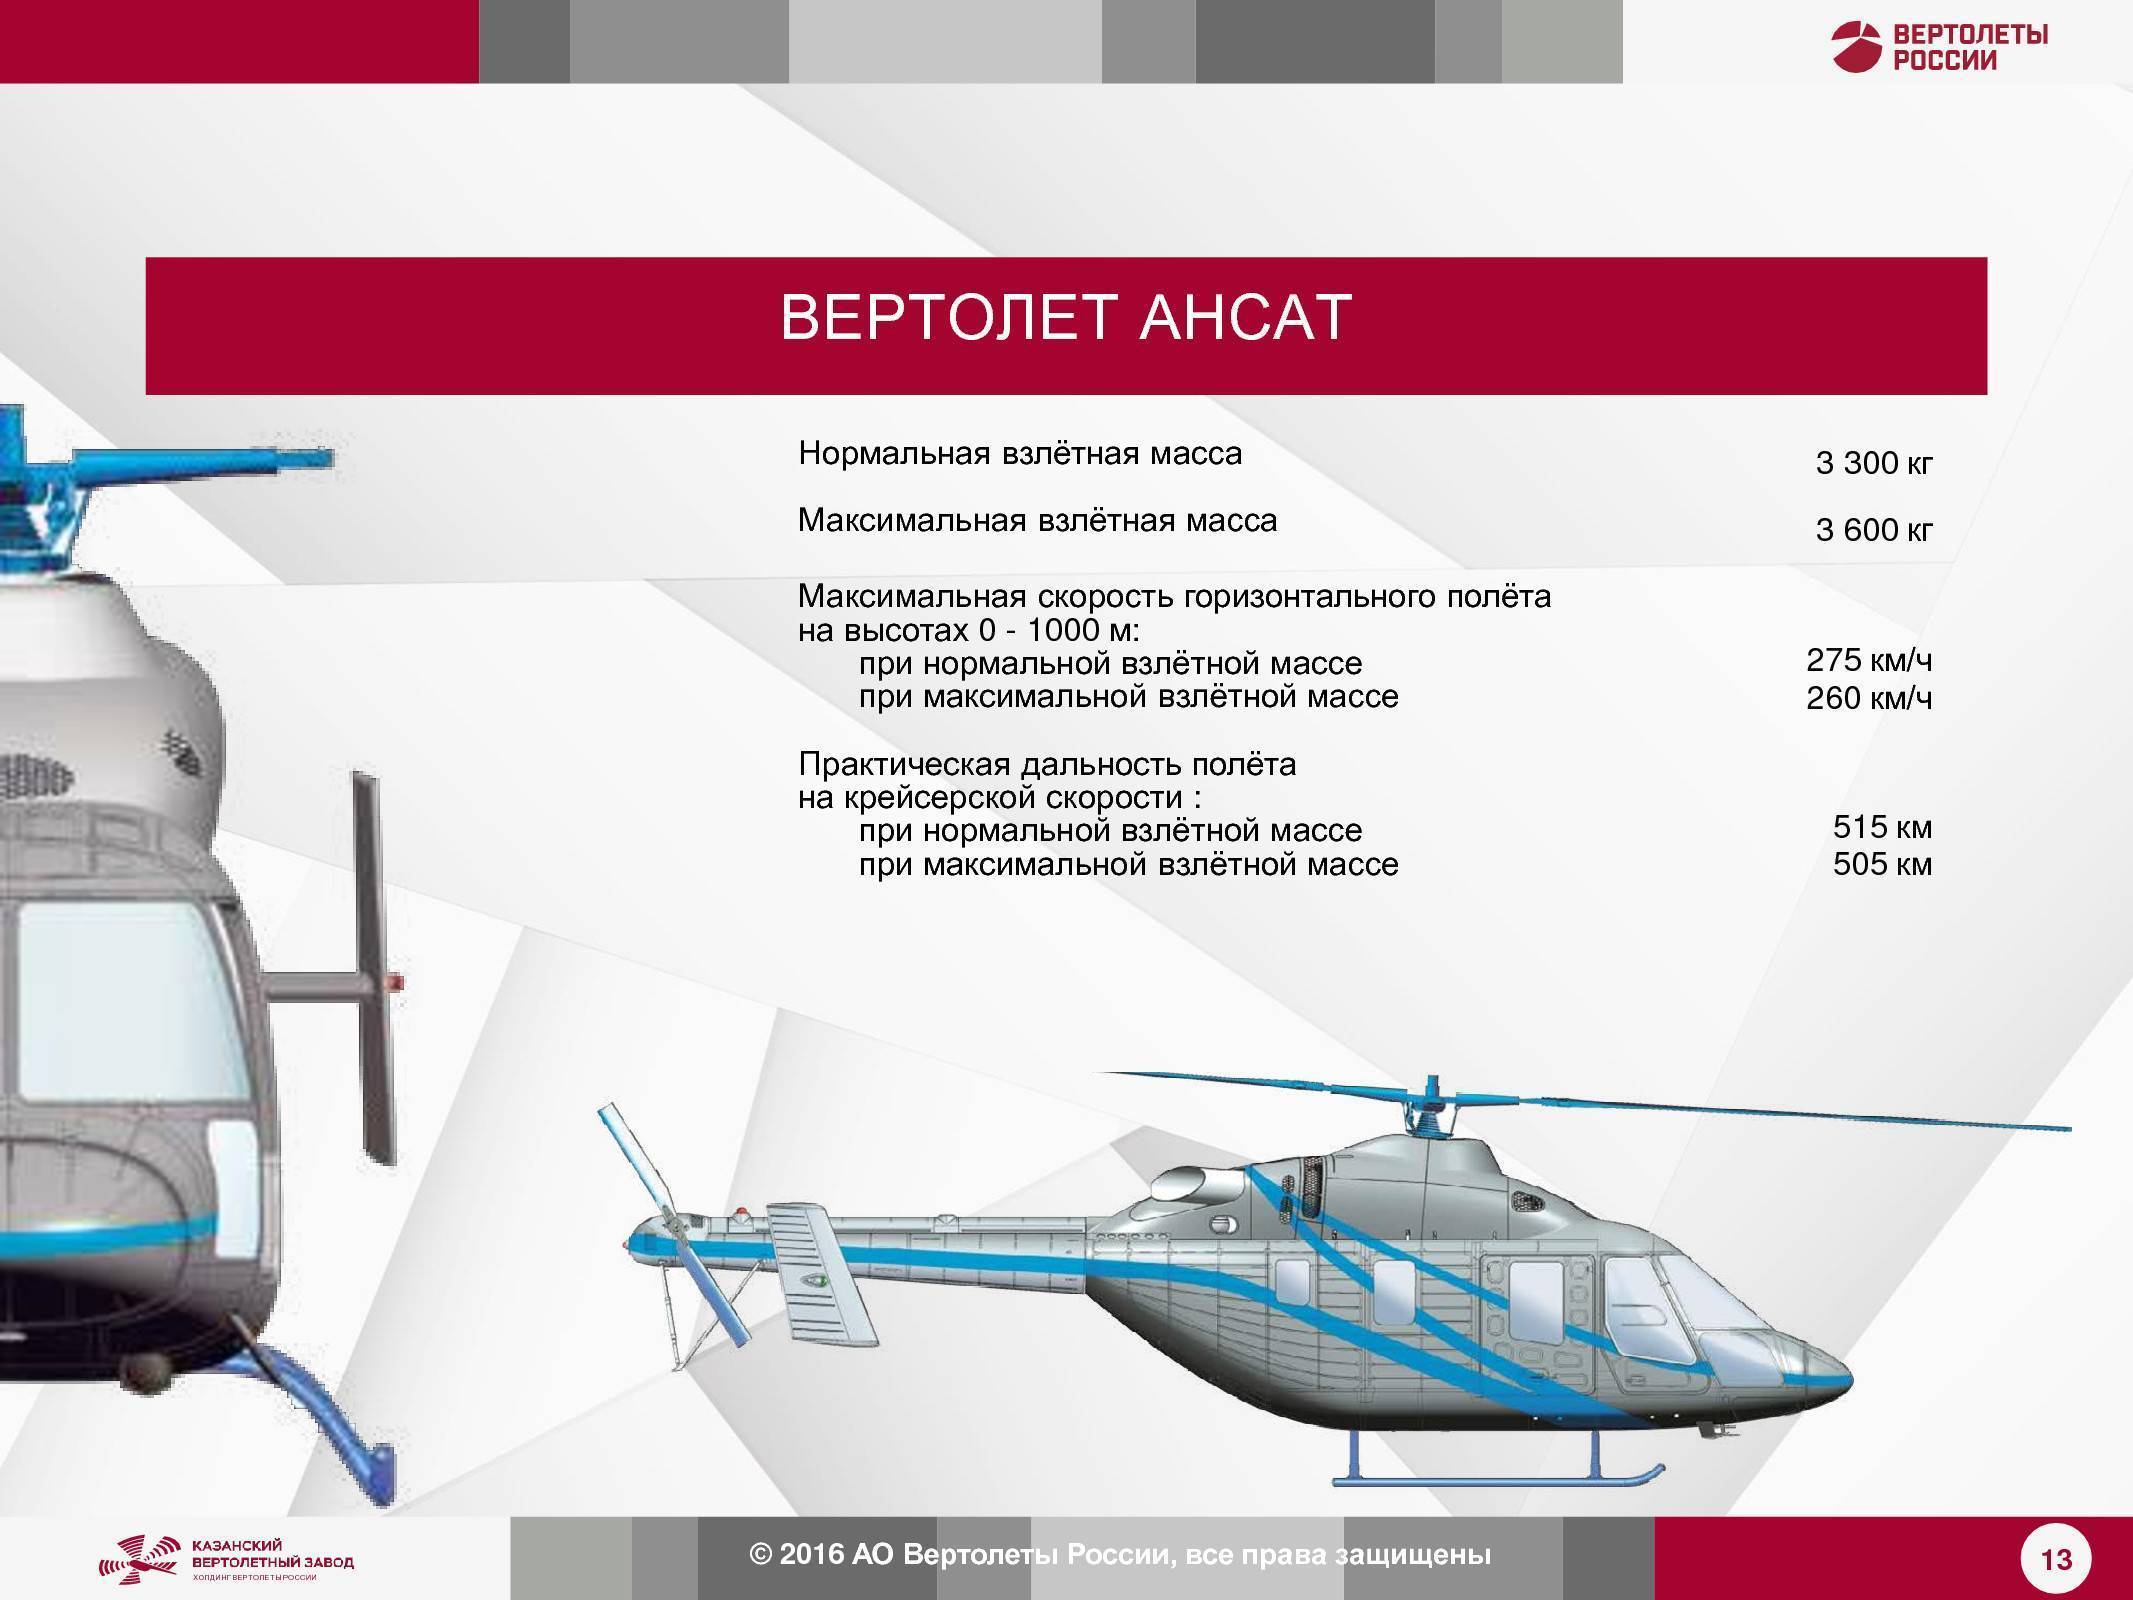 Вертолет ми-8. характеристики. фото. видео.